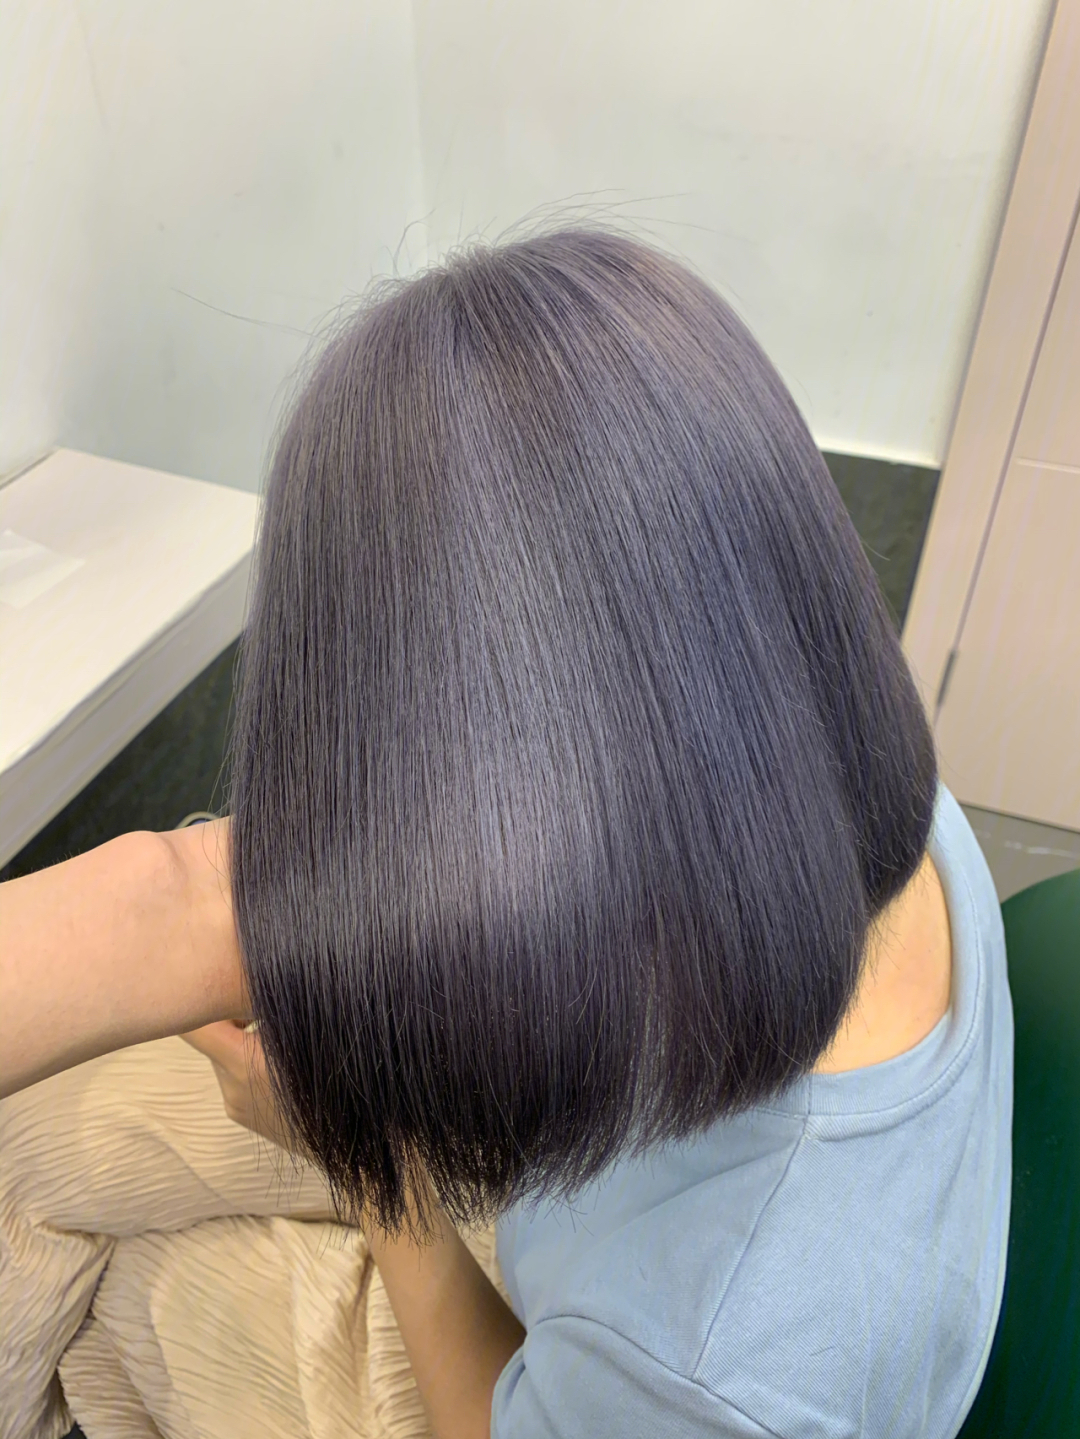 短发单色染紫灰色